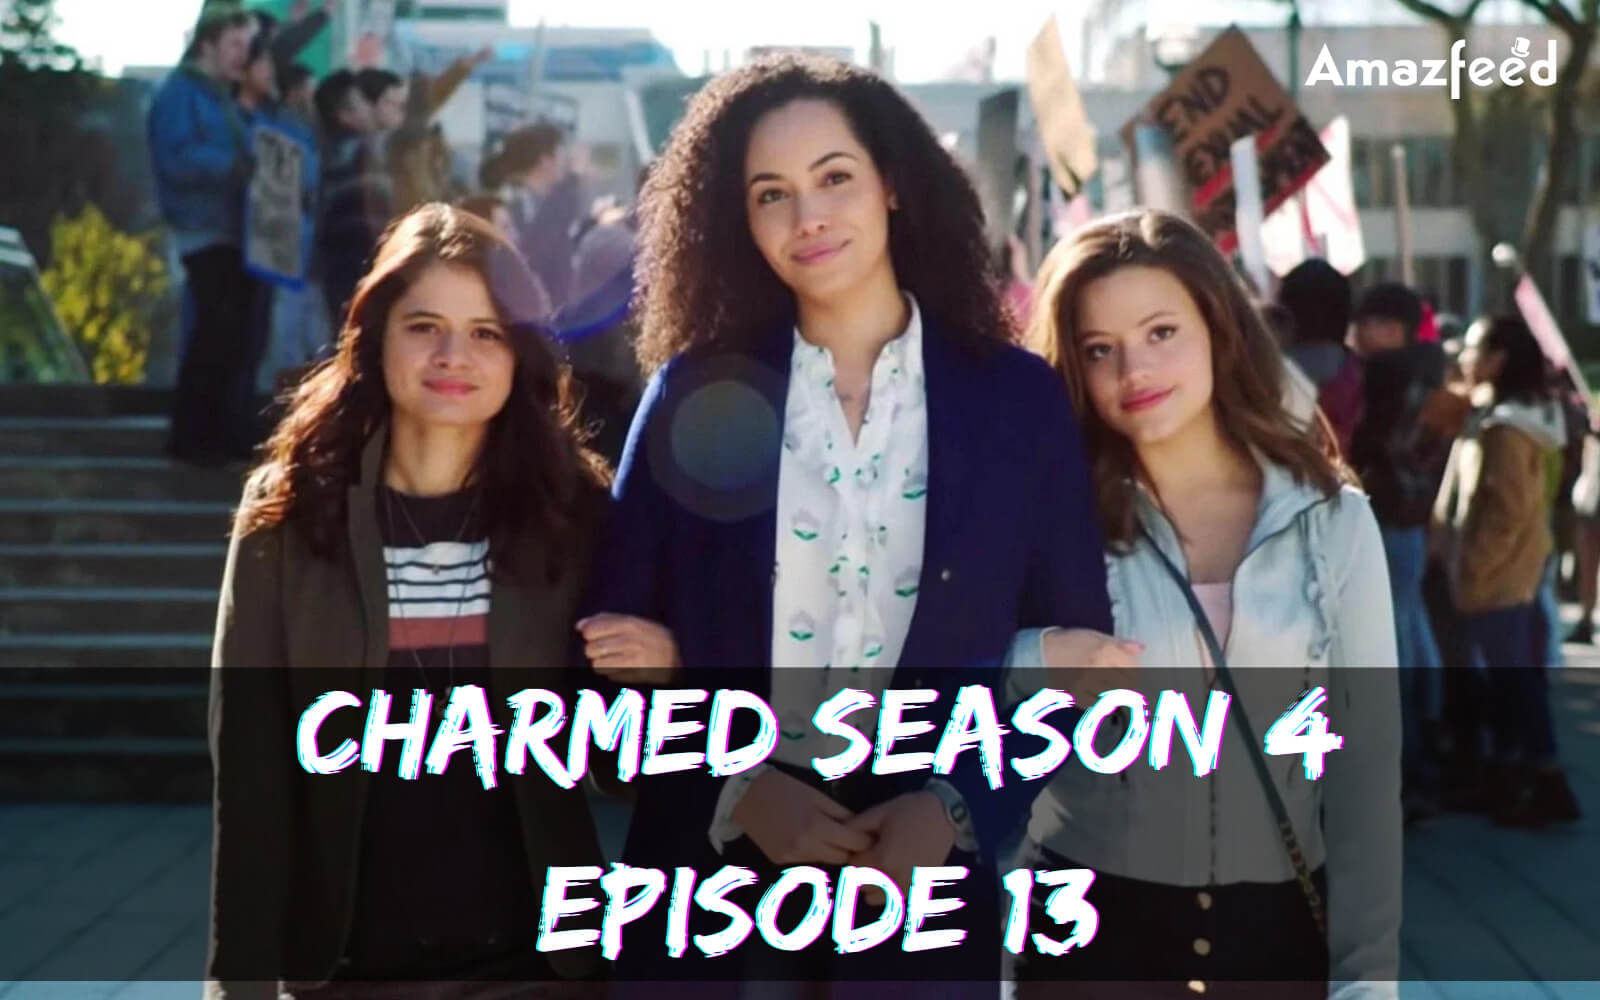 Charmed Season 4 Episode 13 release date